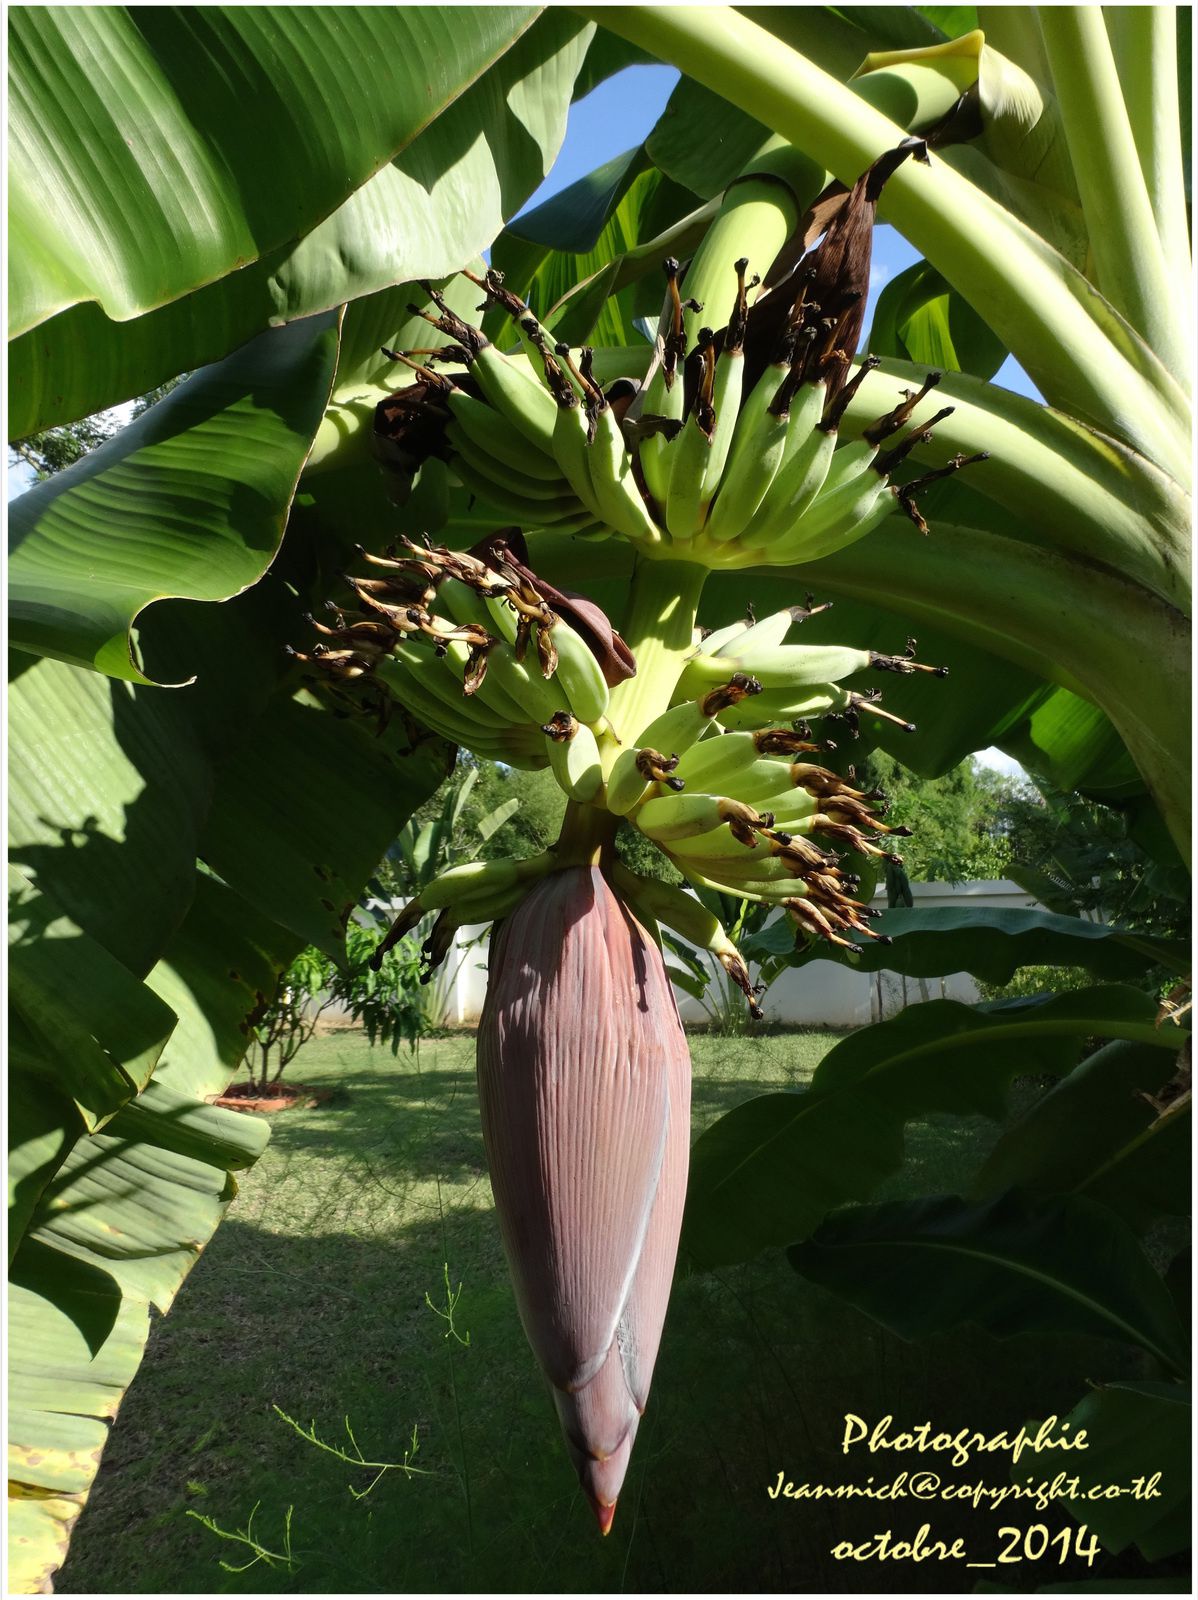 L'évolution de la fleur est rapide tous les 2 jours apparait une nouvelle série de bananes.